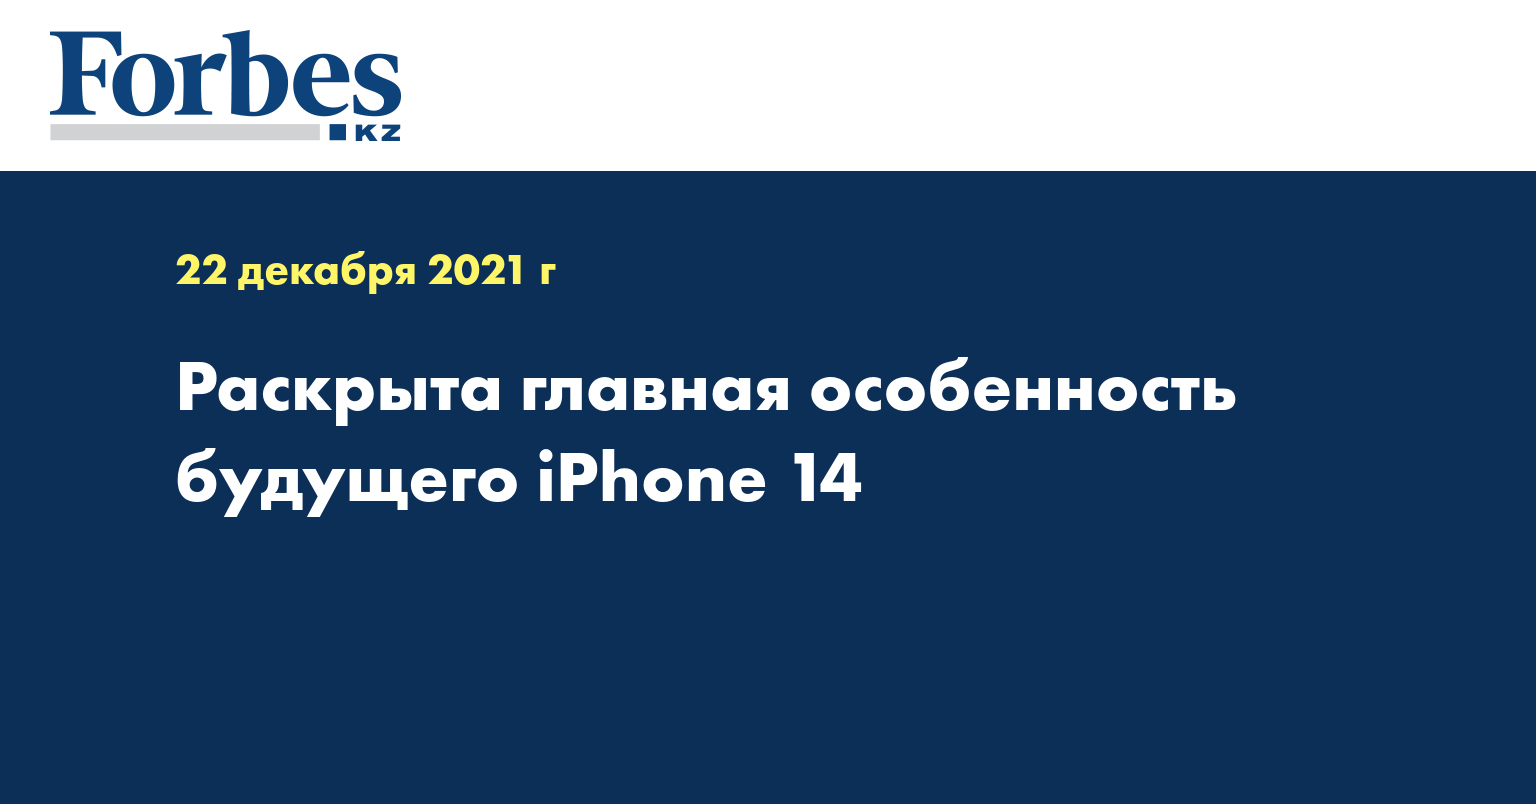 Раскрыта главная особенность будущего iPhone 14